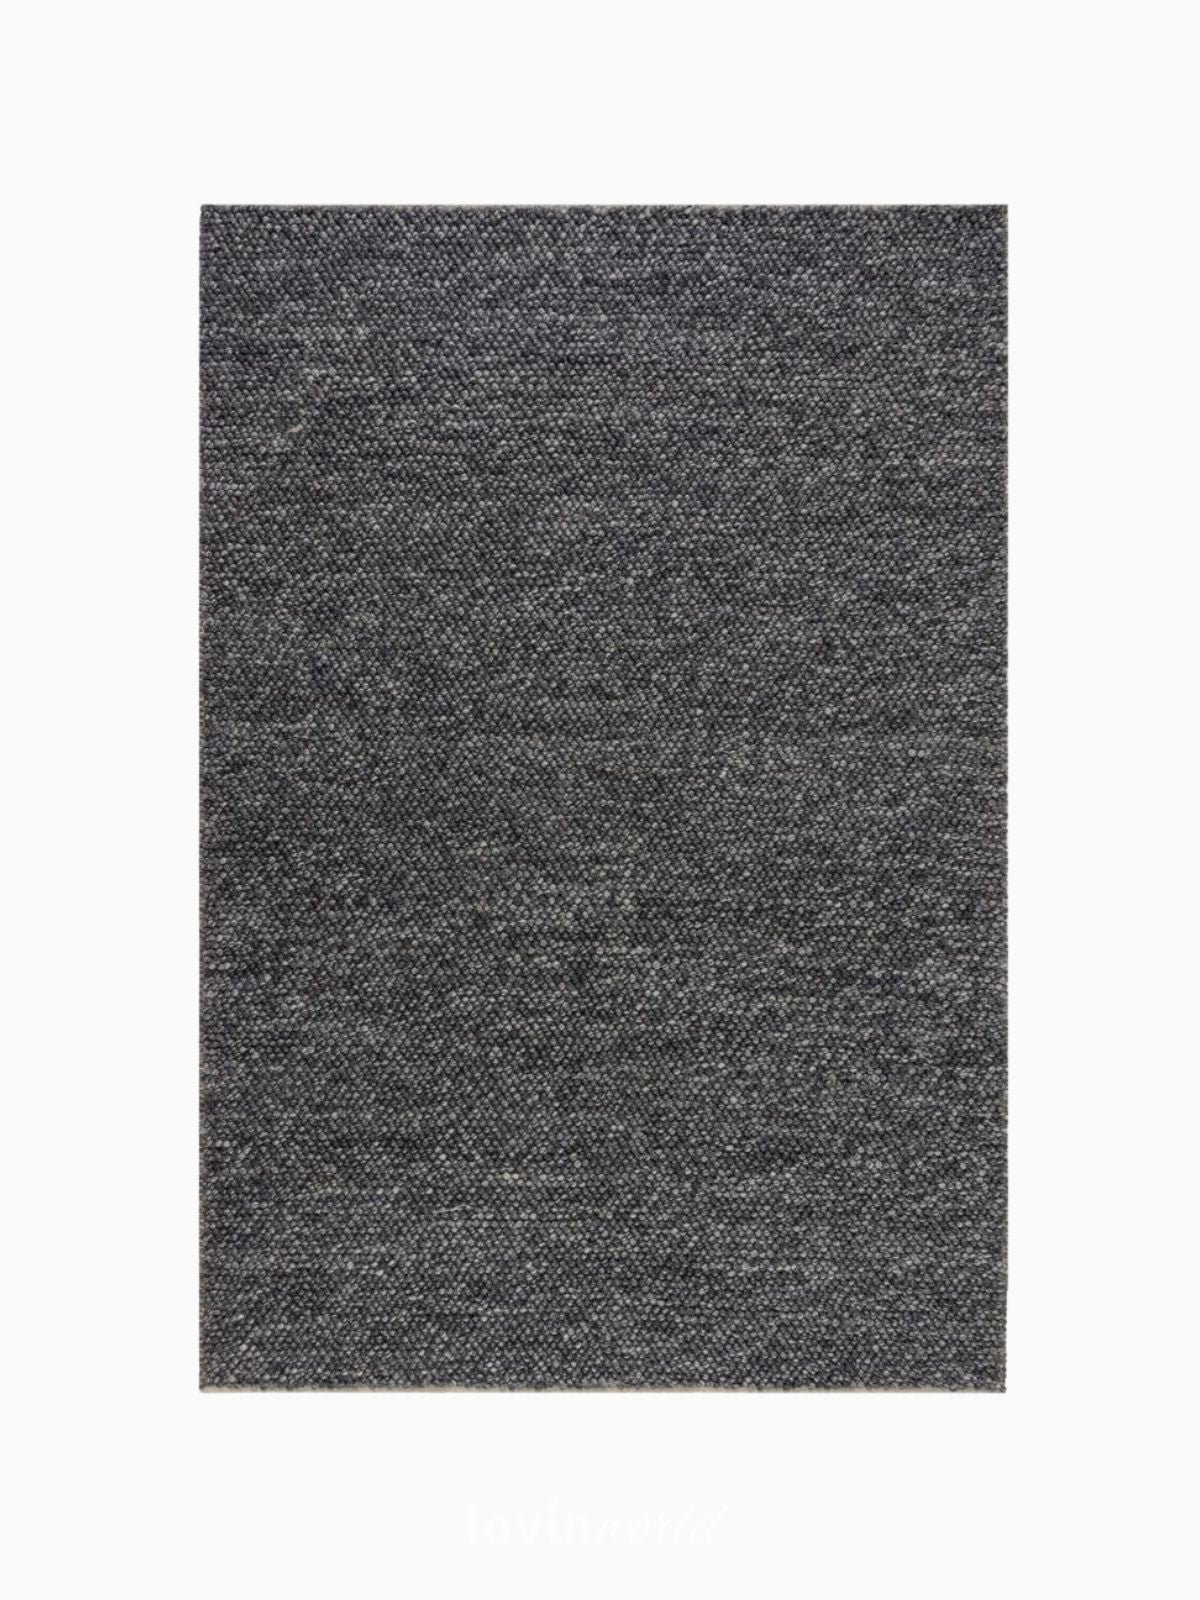 Tappeto di design MInerals in lana, colore grigio scuro-1